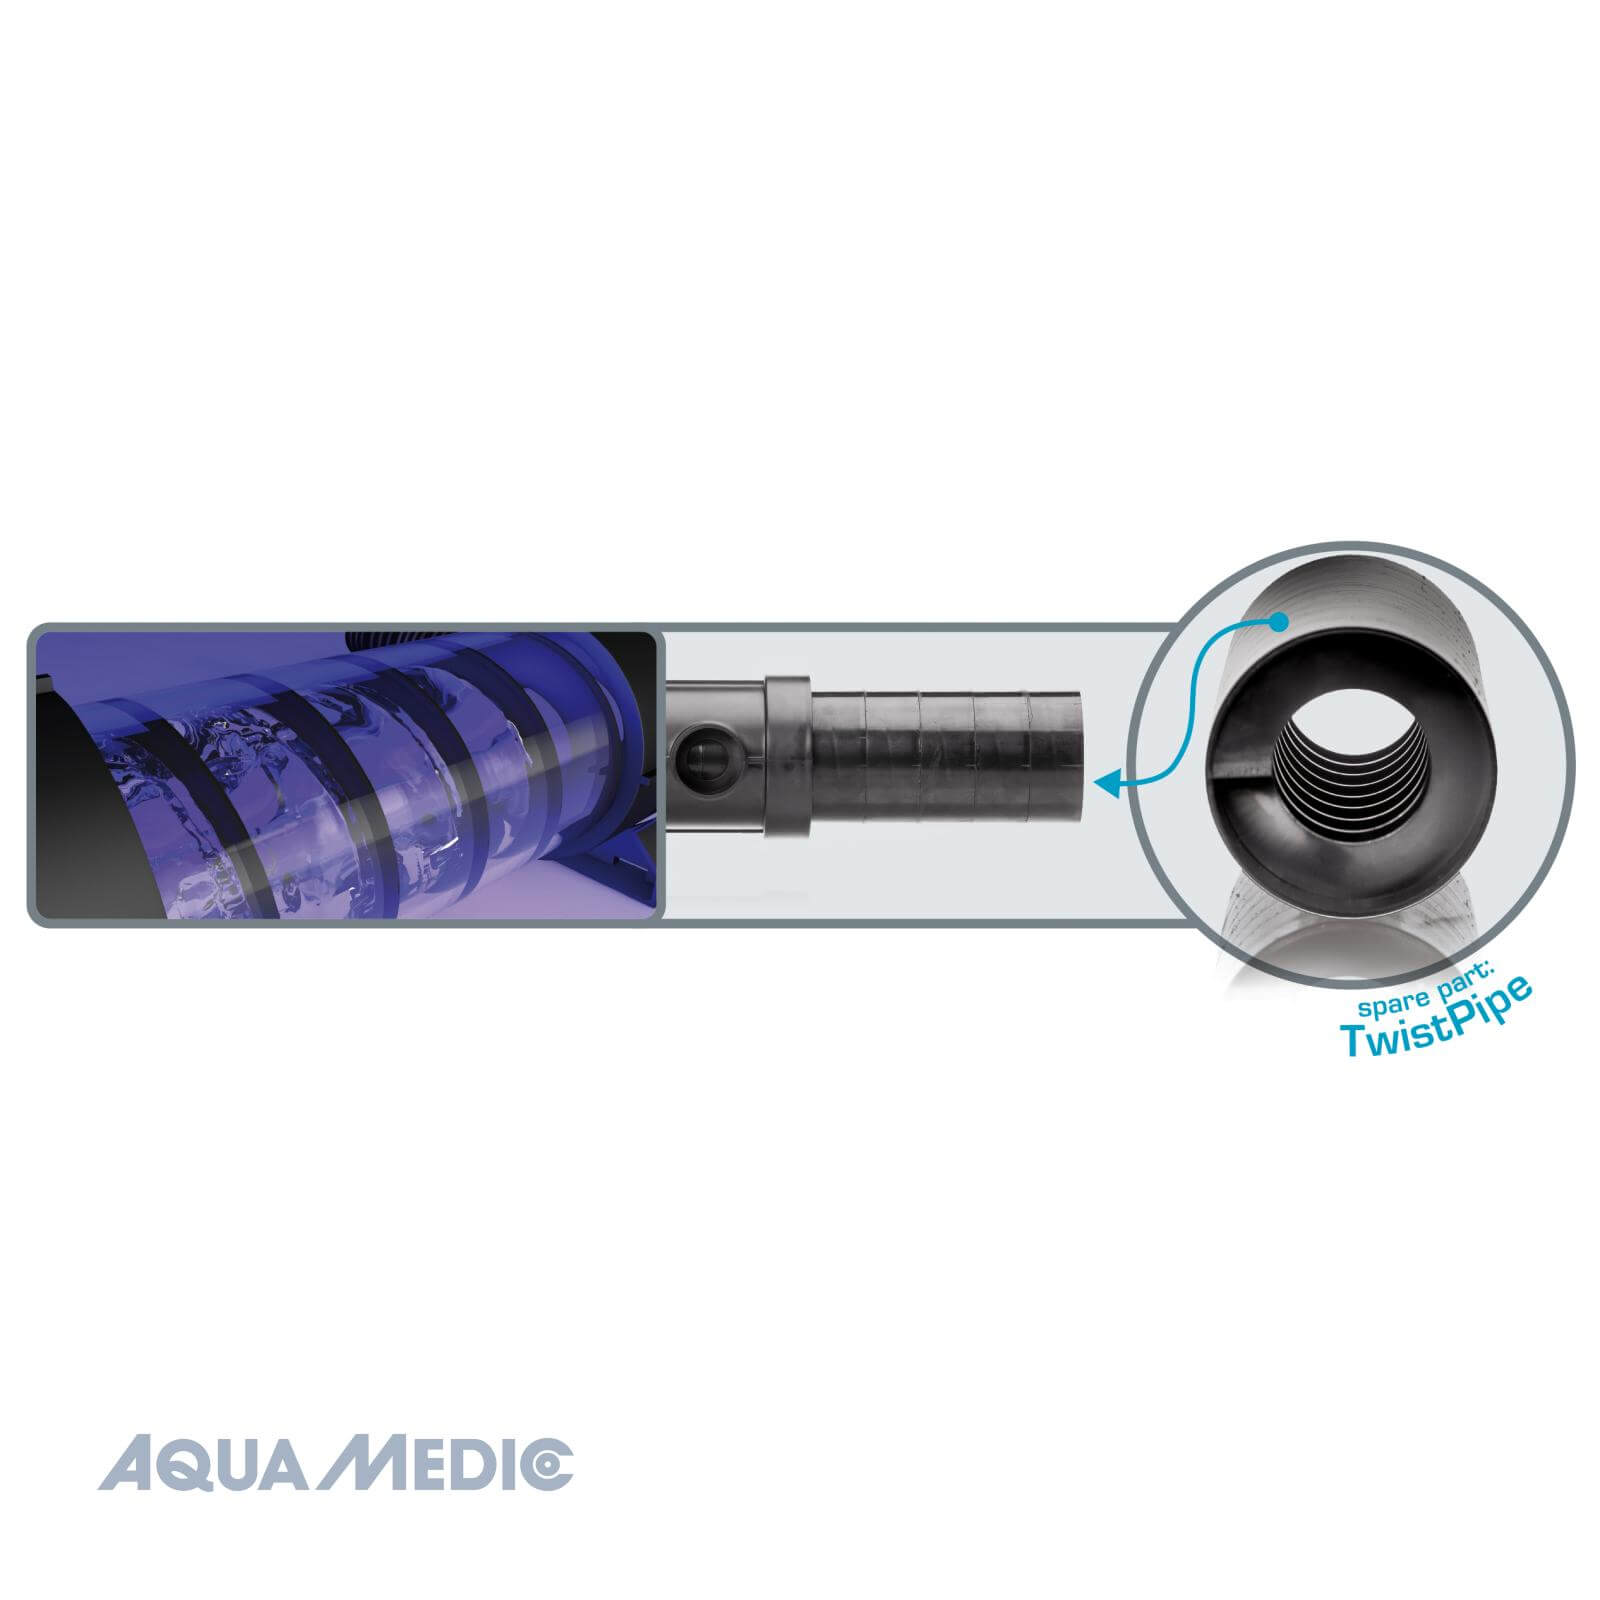 Aqua Medic helix max 2.0